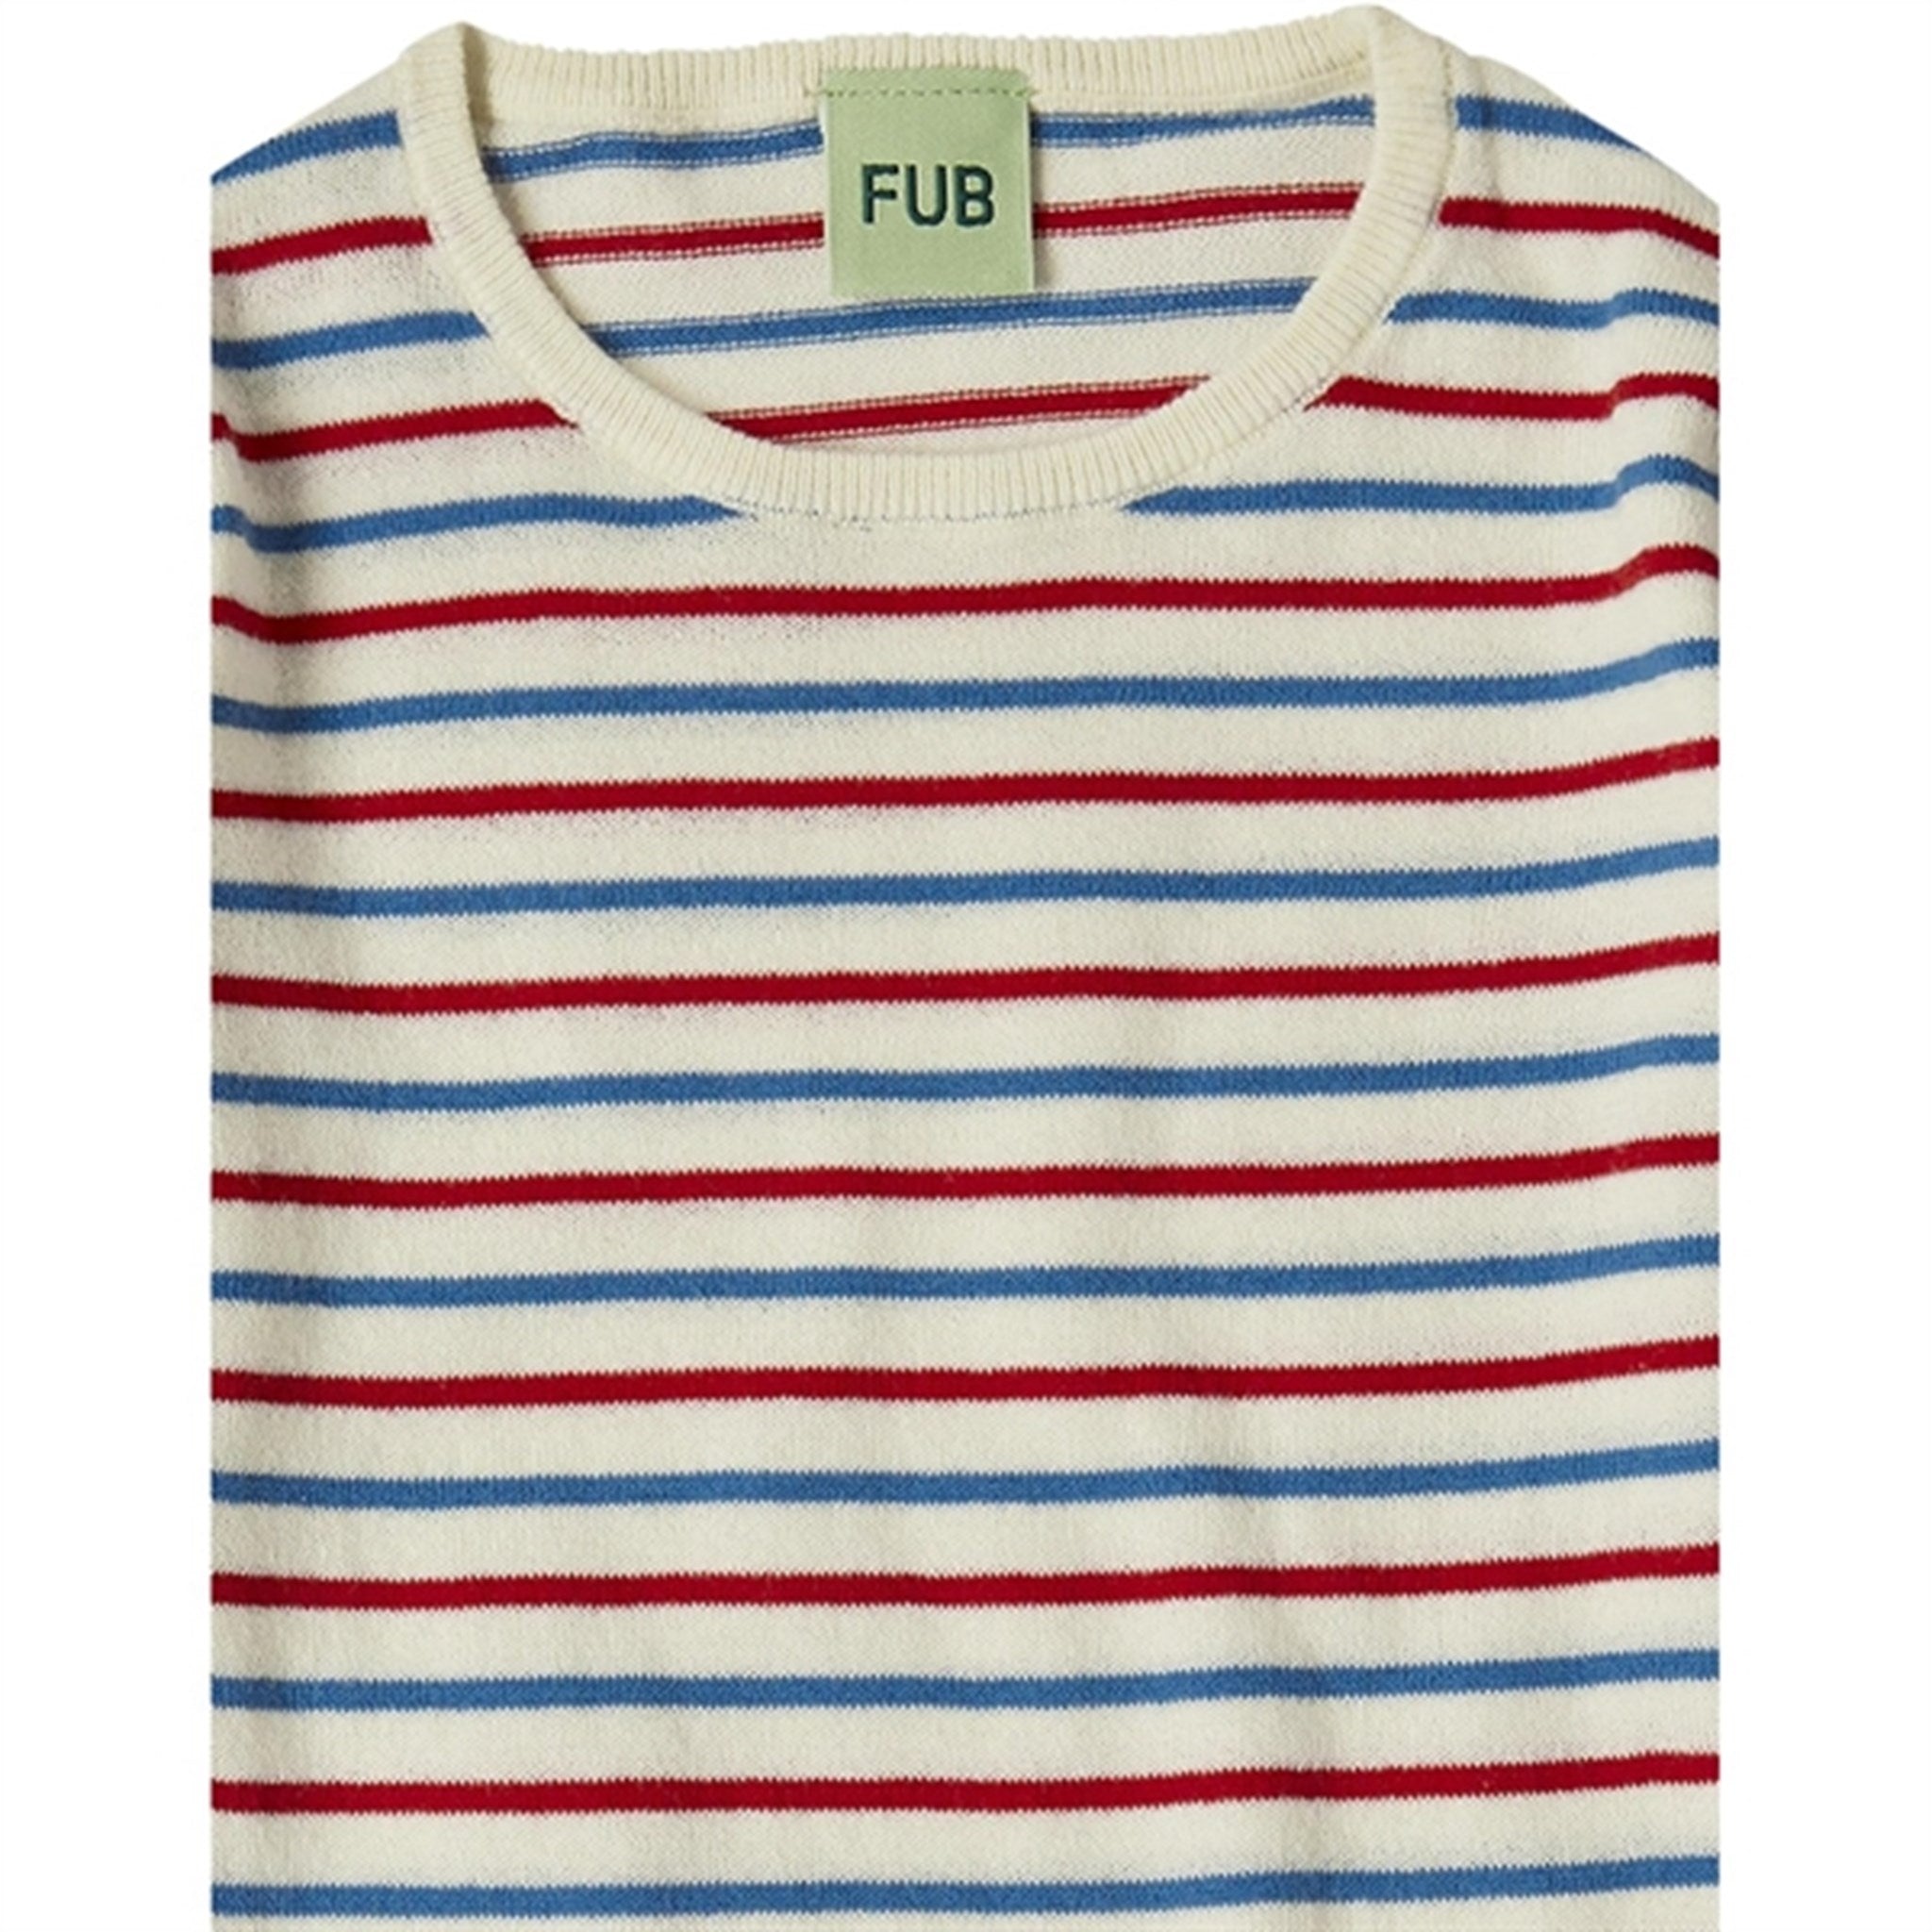 FUB Ecru/Azure/Crimson Red Contrast Striped Bluse 2